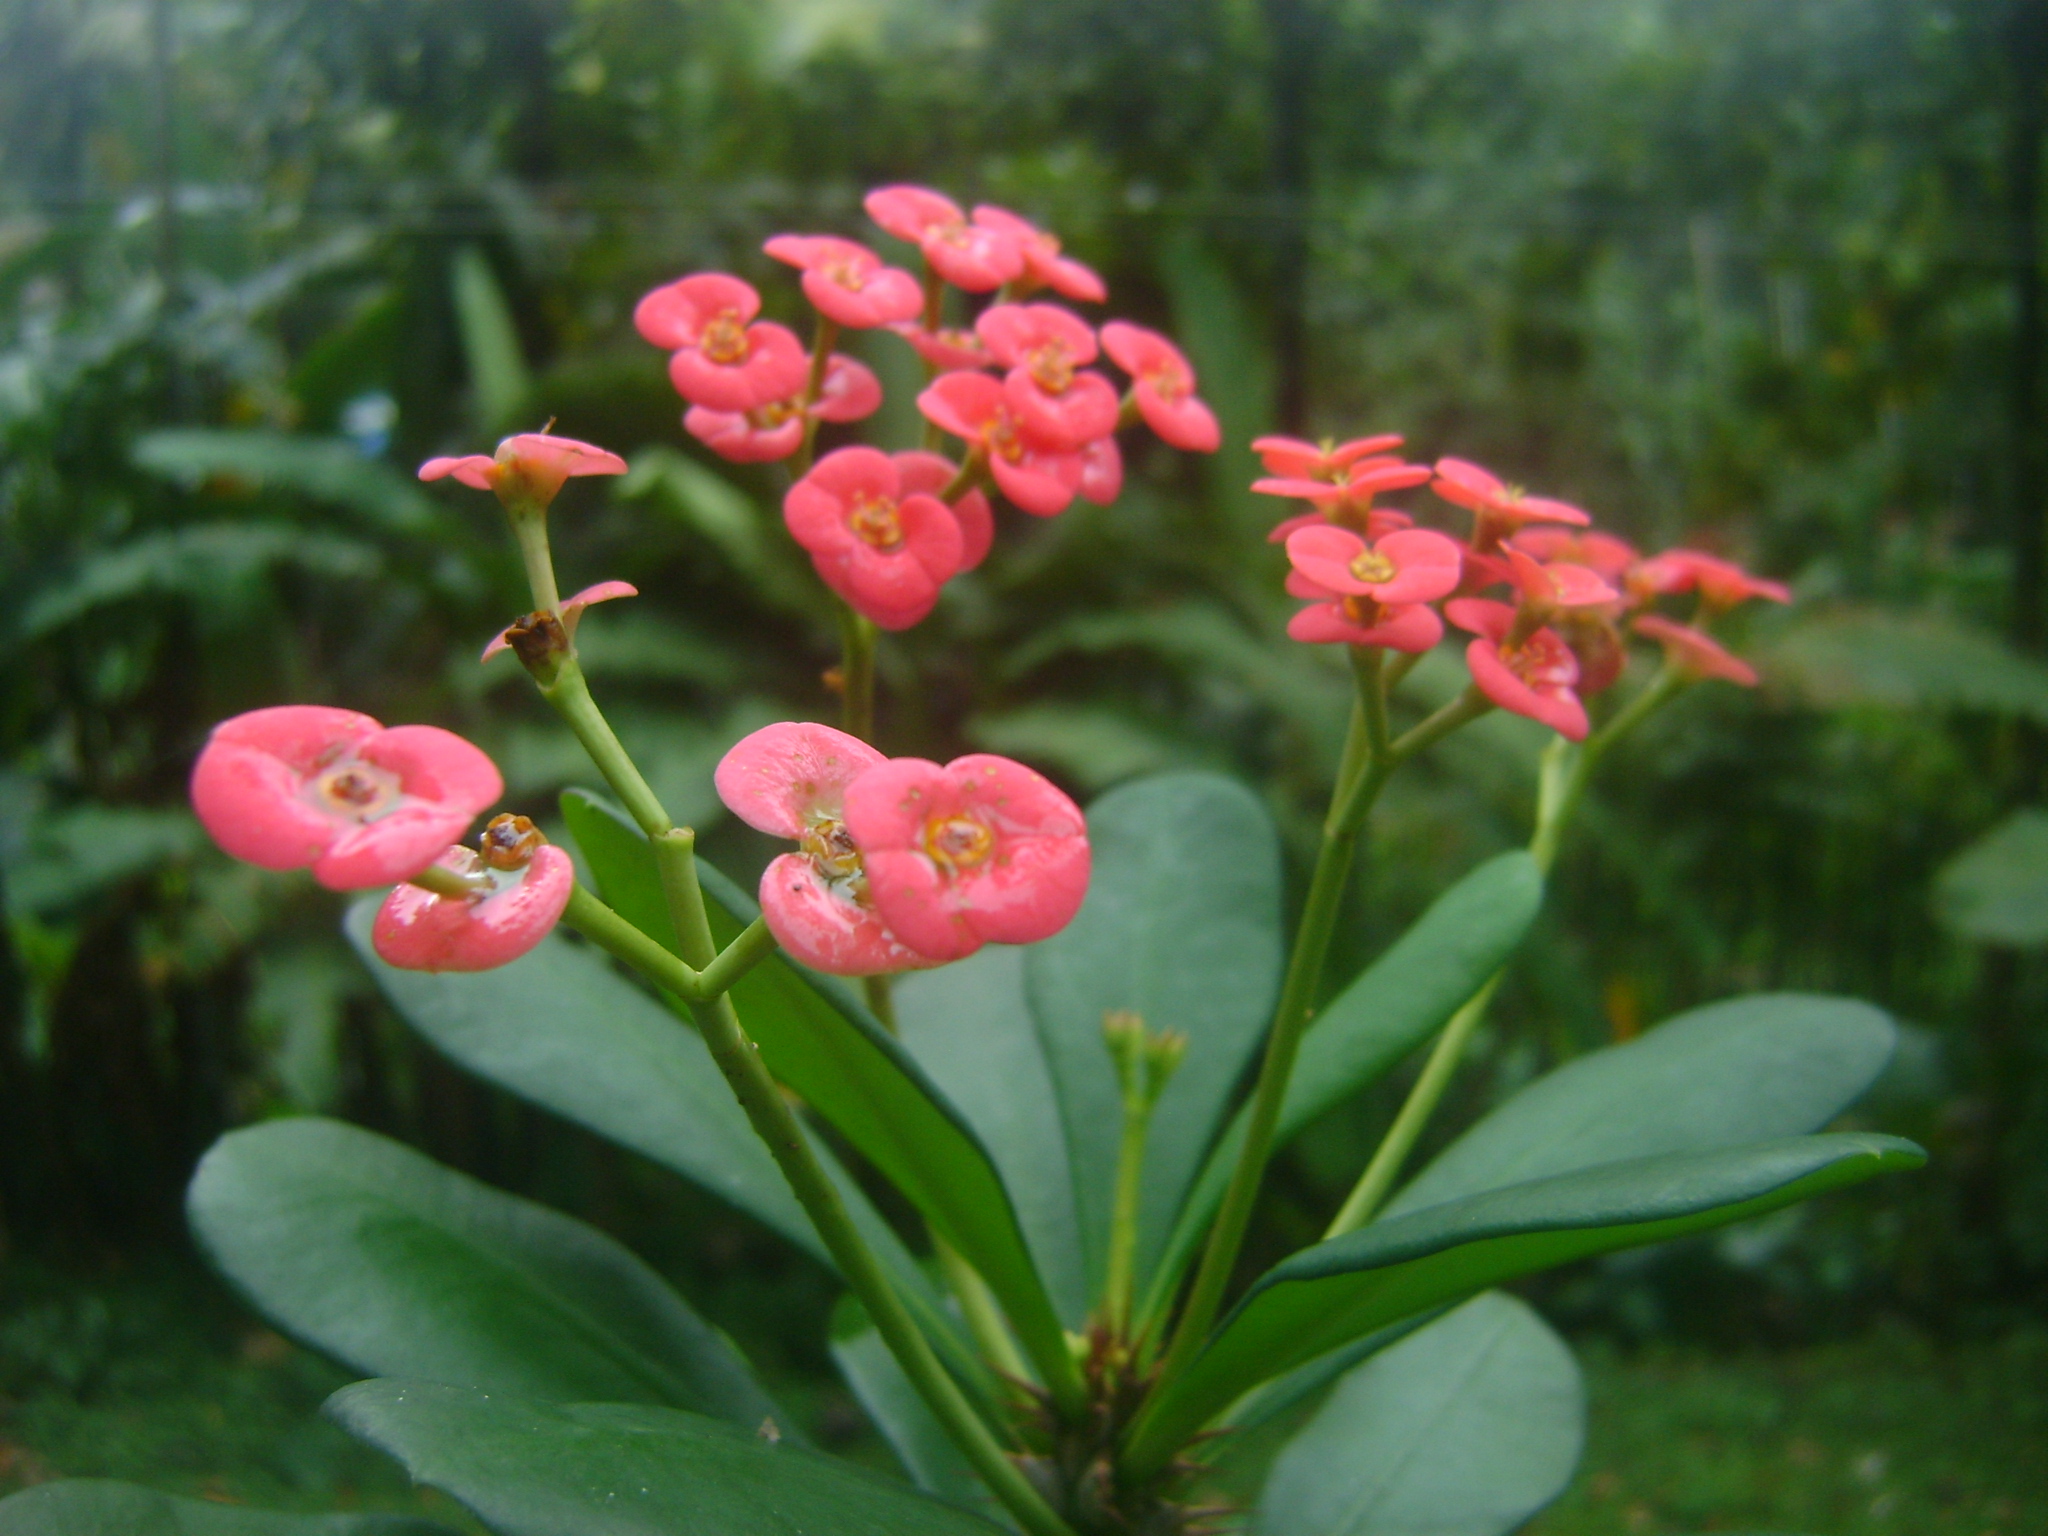 File:Euphorbia flowers from Kerala garden.jpg - Wikimedia Commons